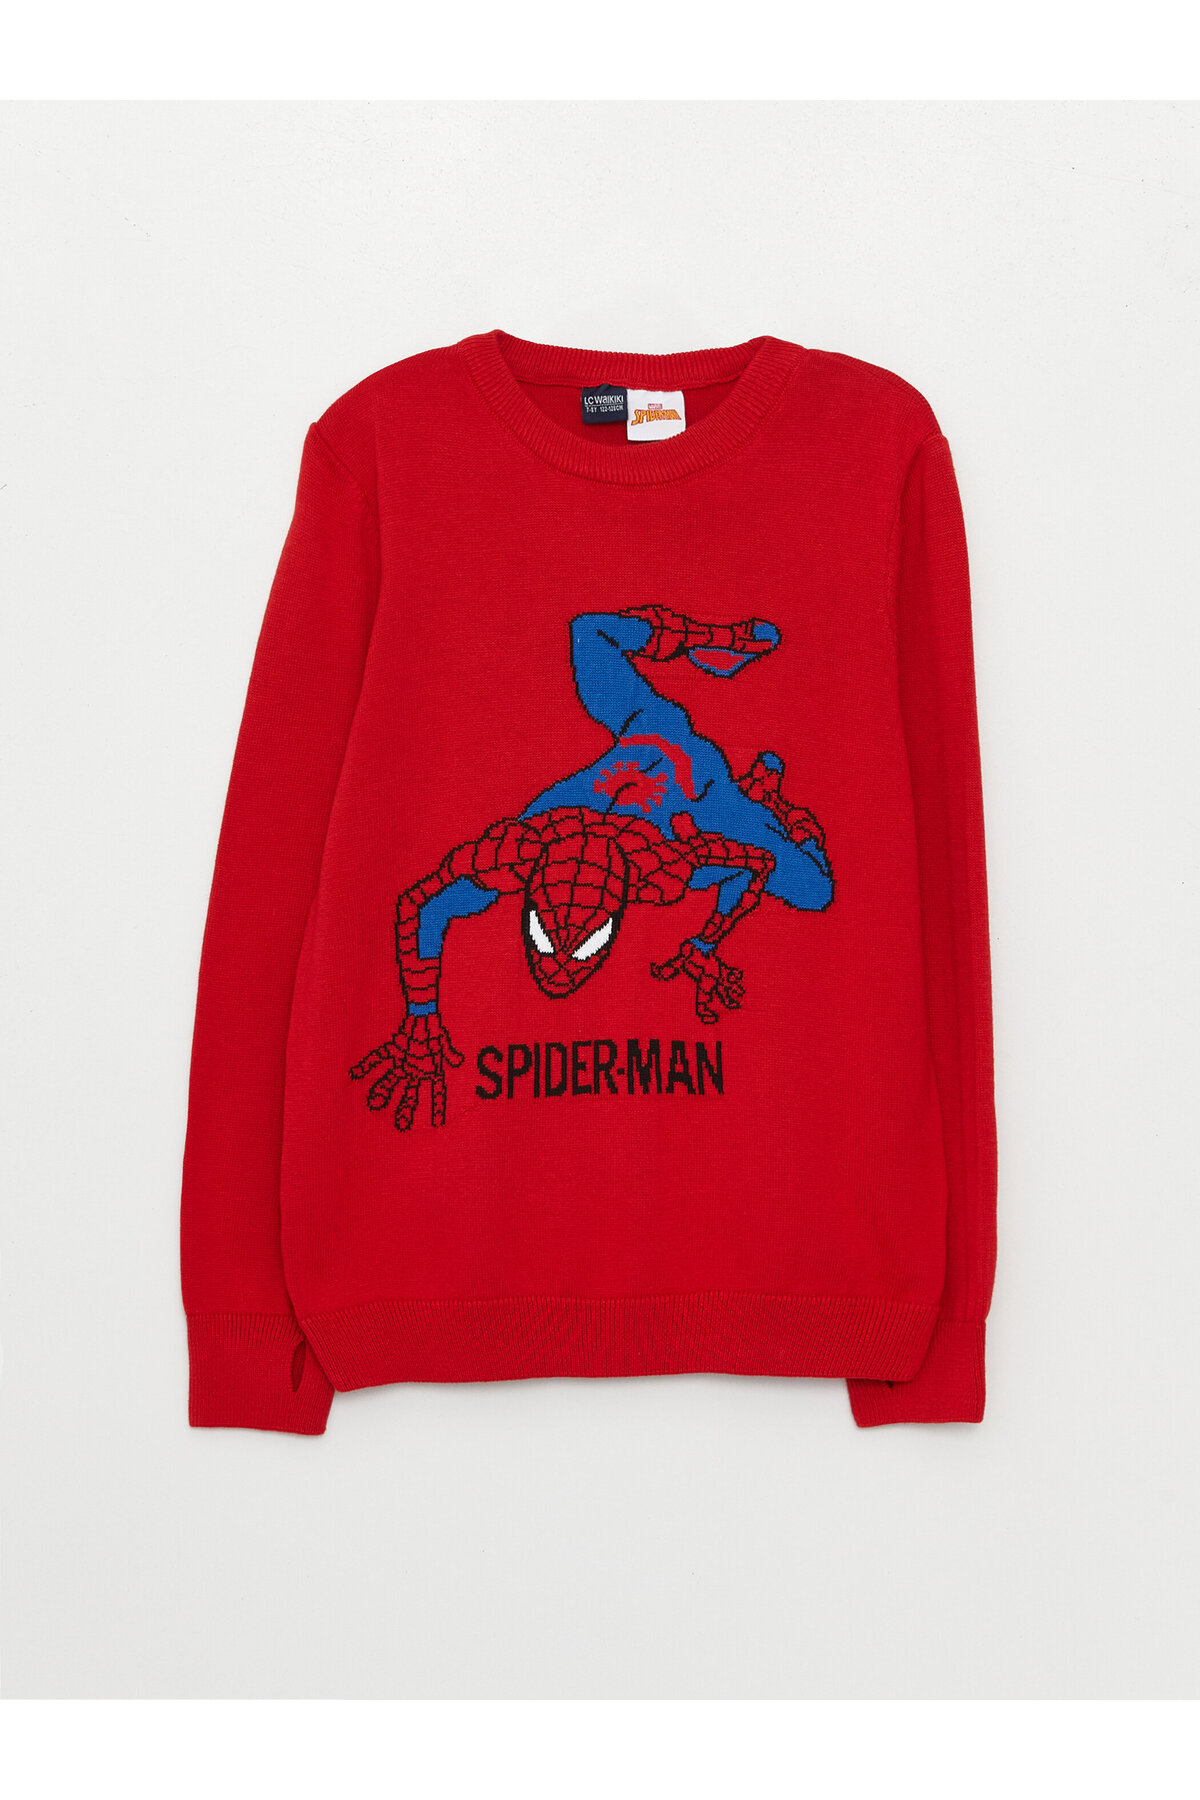 Levně LC Waikiki Crew Neck Spiderman Patterned Long Sleeve Boy's Knitwear Sweater